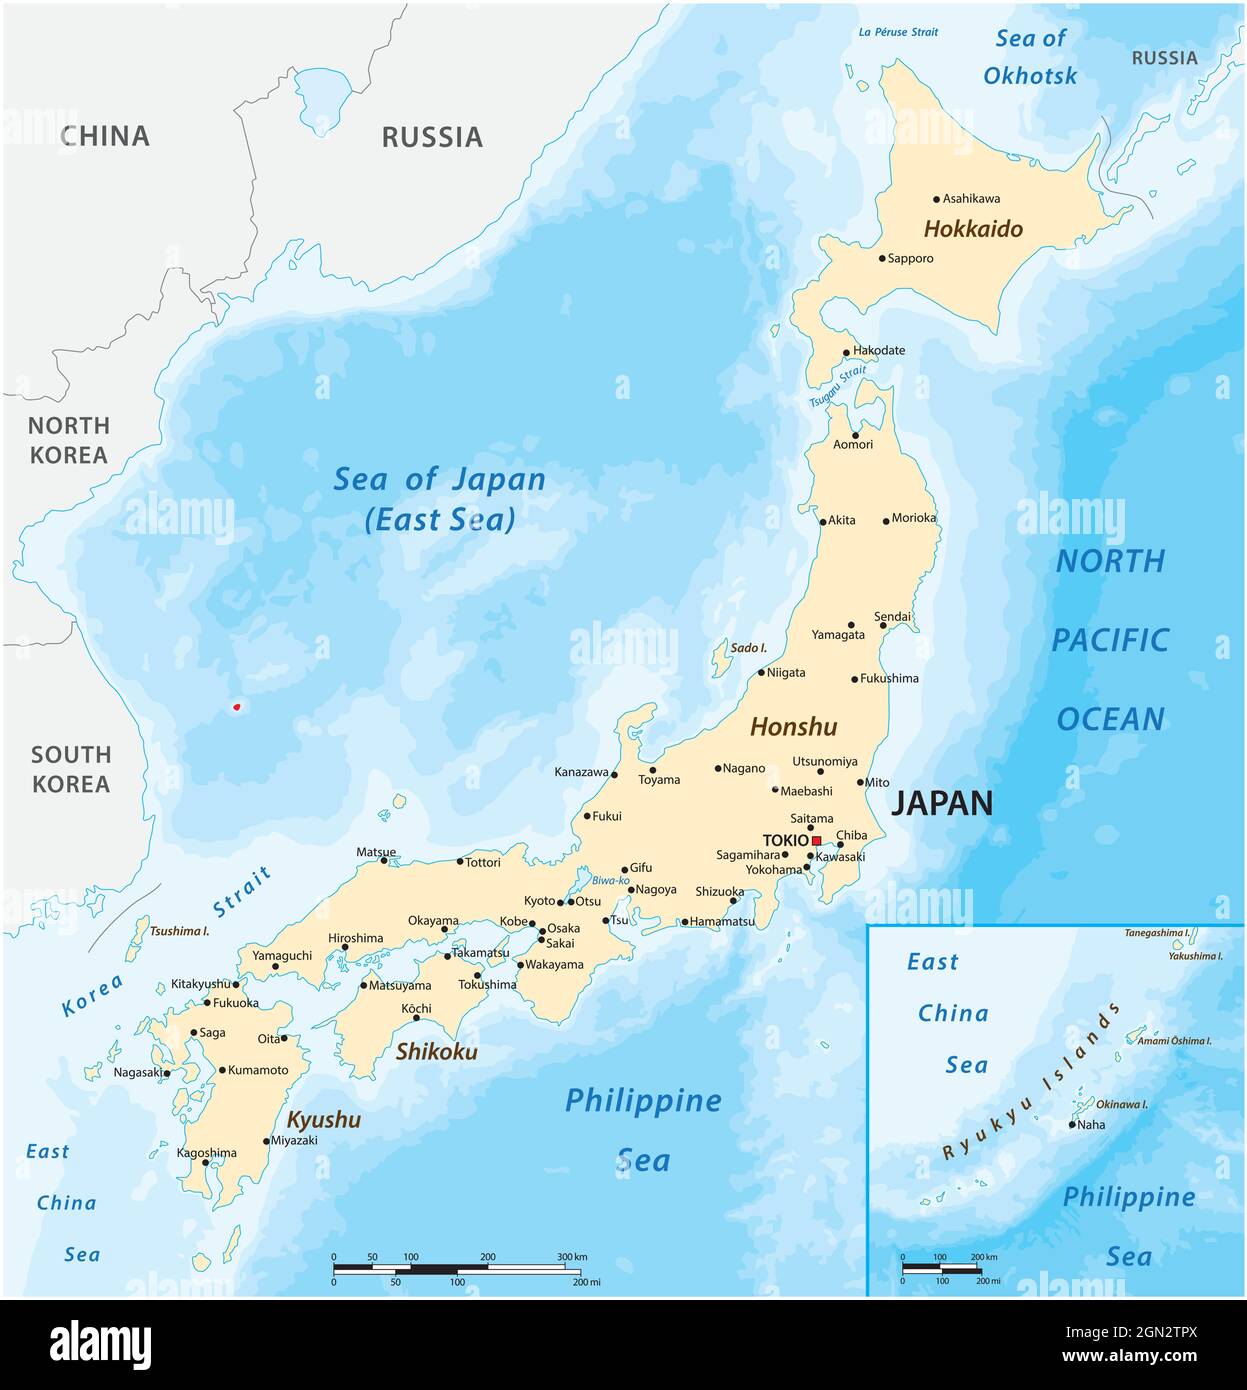 Conception D'illustration D'une Carte Du Japon Avec La Capitale De Tokyo,  Pays Du Japon